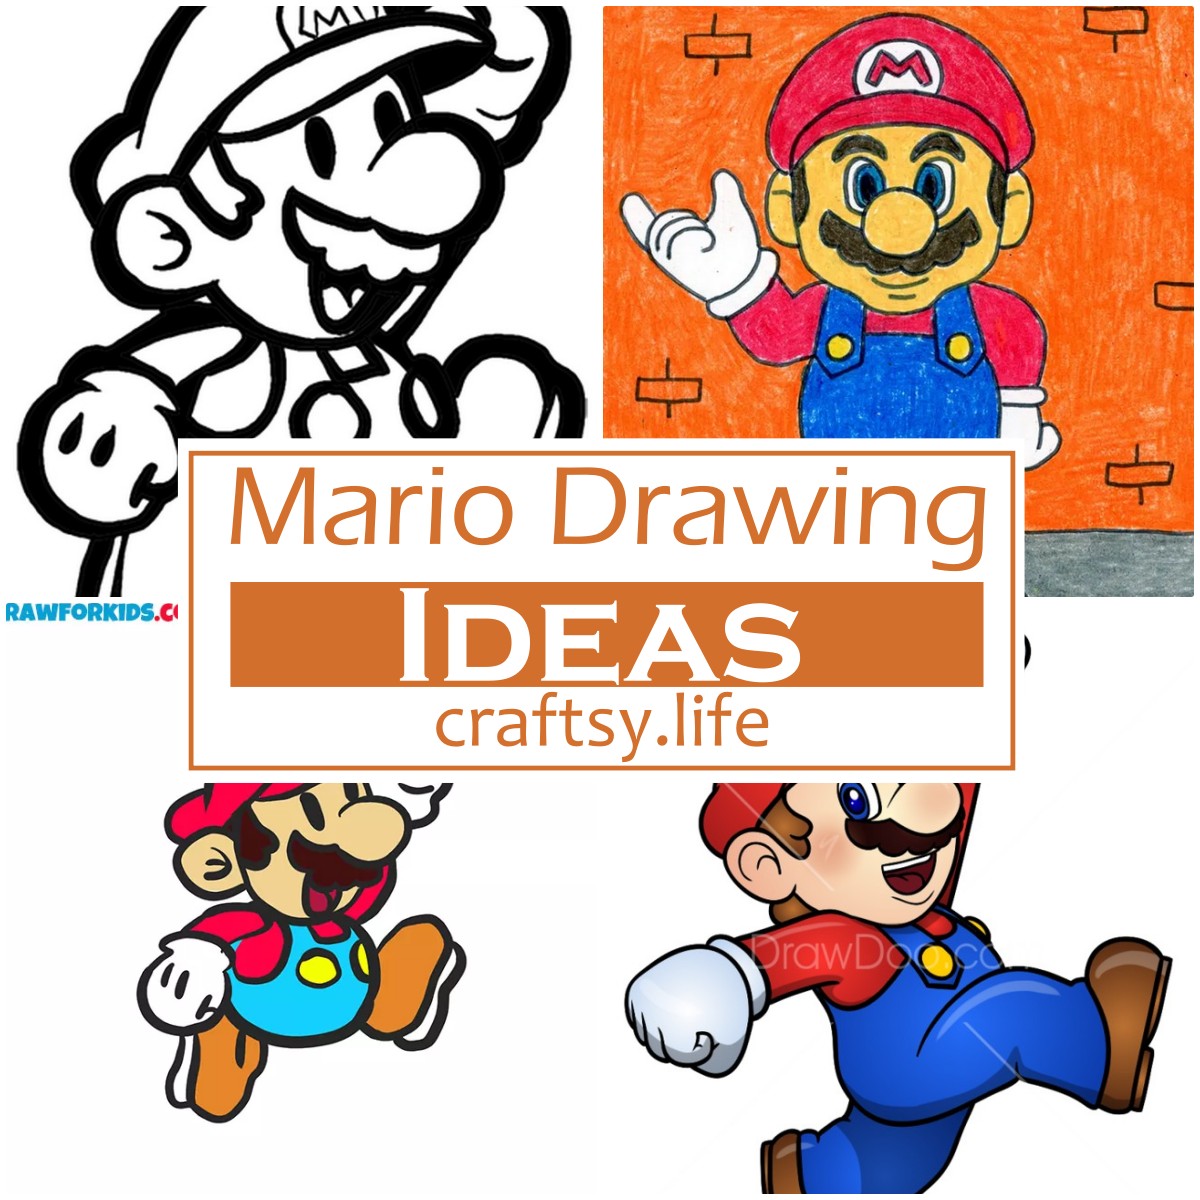 Mario Drawing Ideas 1